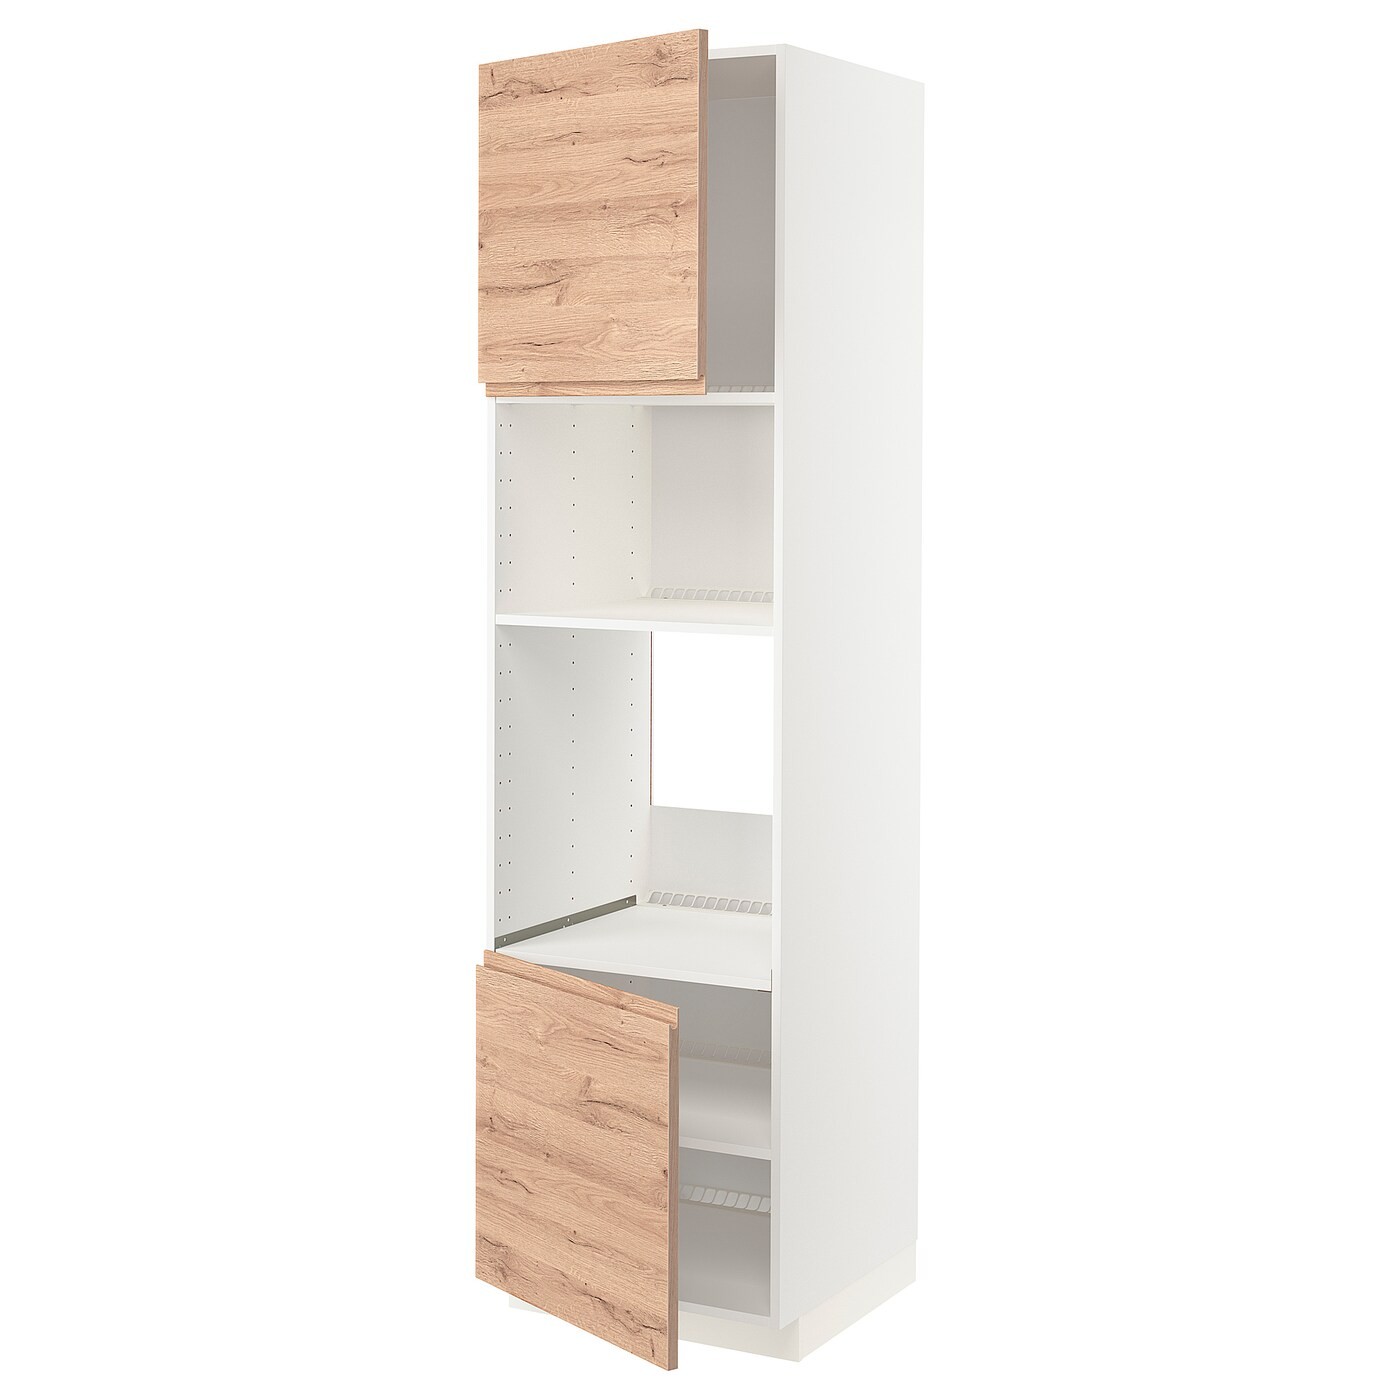 IKEA METOD МЕТОД Высокий шкаф для духовки / СВЧ, белый / Voxtorp имитация дуб, 60x60x220 см 89458774 | 894.587.74